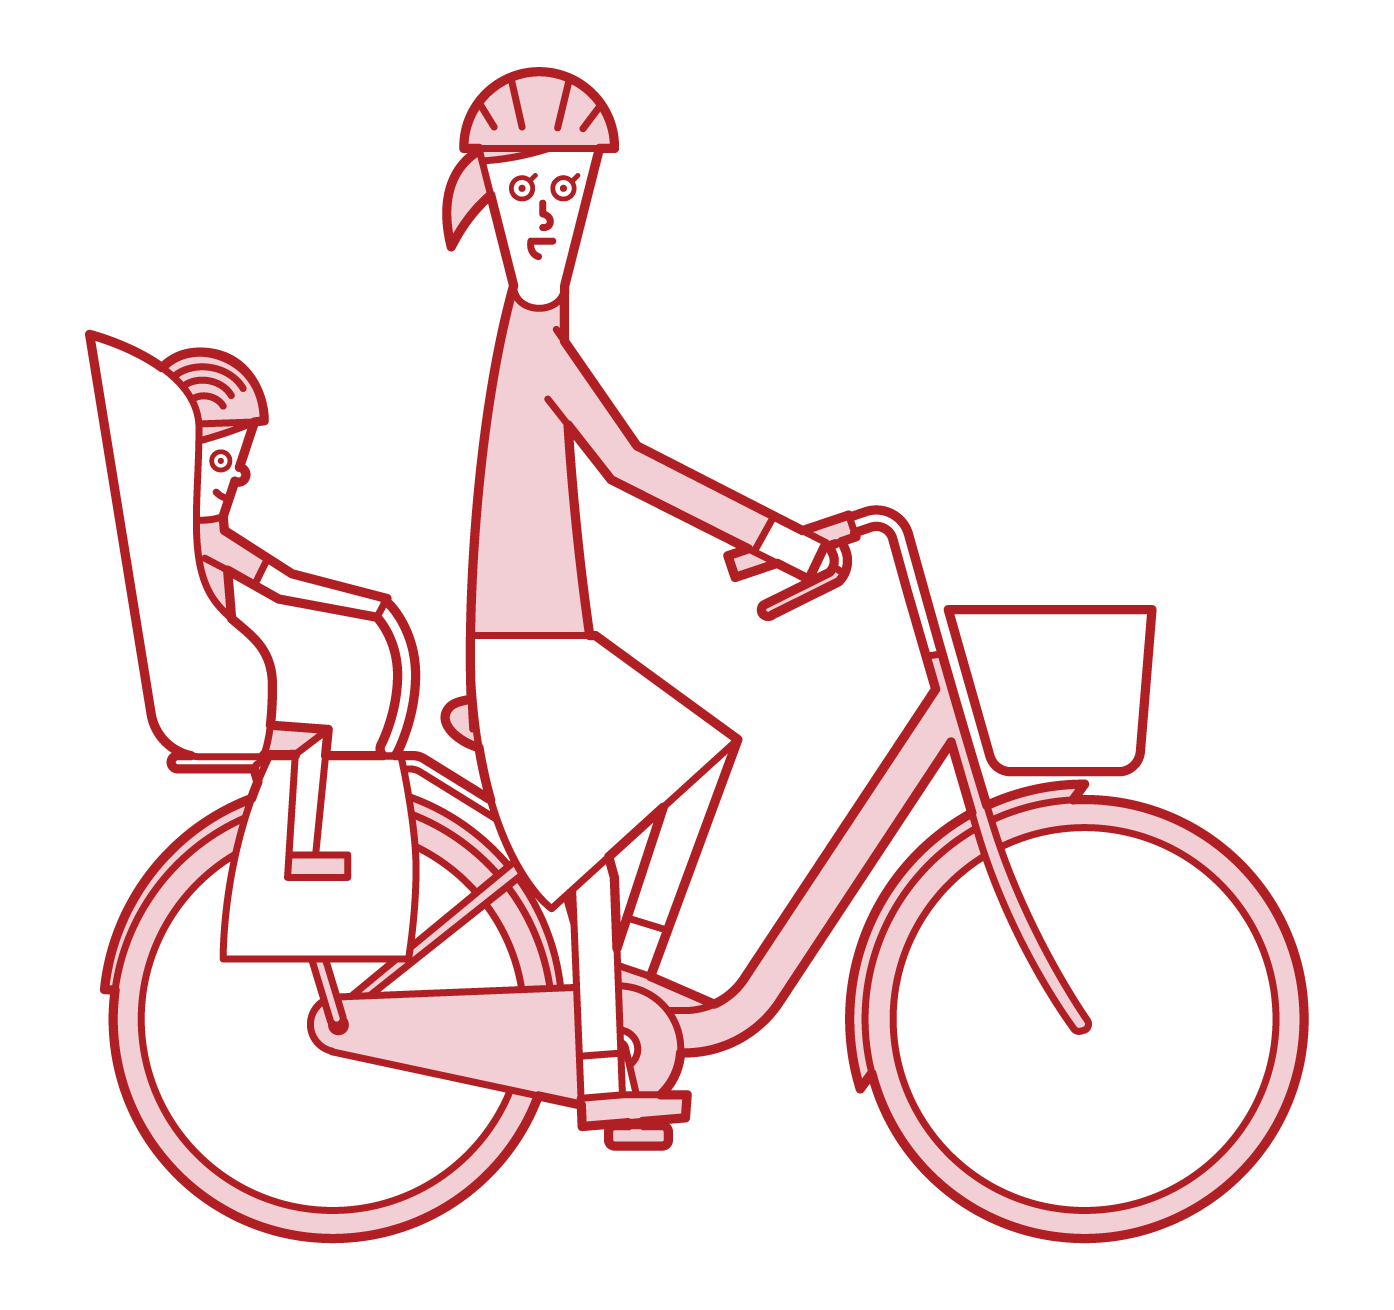 자전거를 탈 때 아이들과 함께 달리는 사람 (여성)의 그림